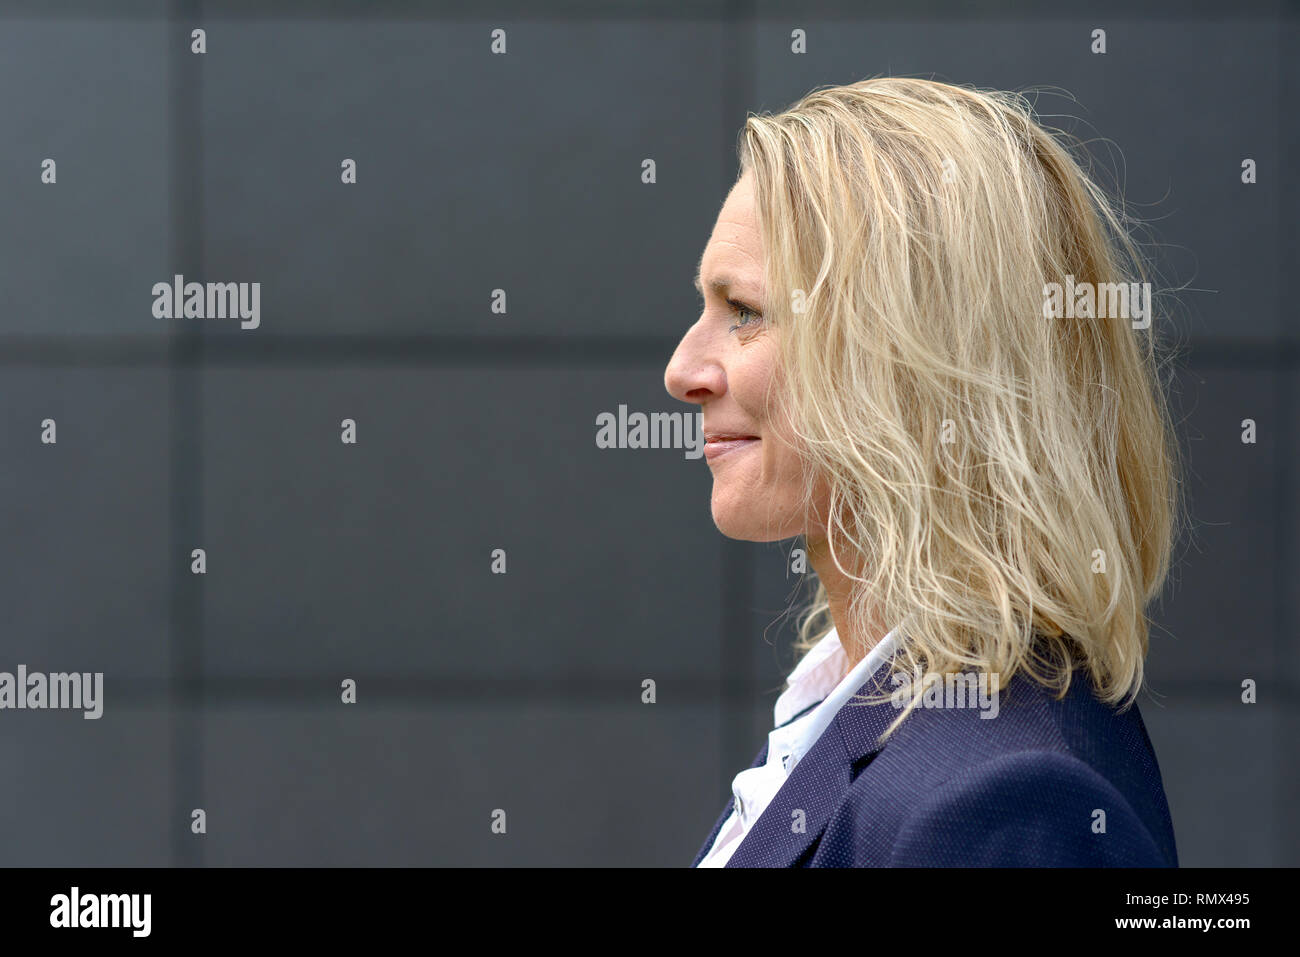 Profile head shot of a happy blonde femme avec les cheveux ébouriffés smiling with copy space Banque D'Images